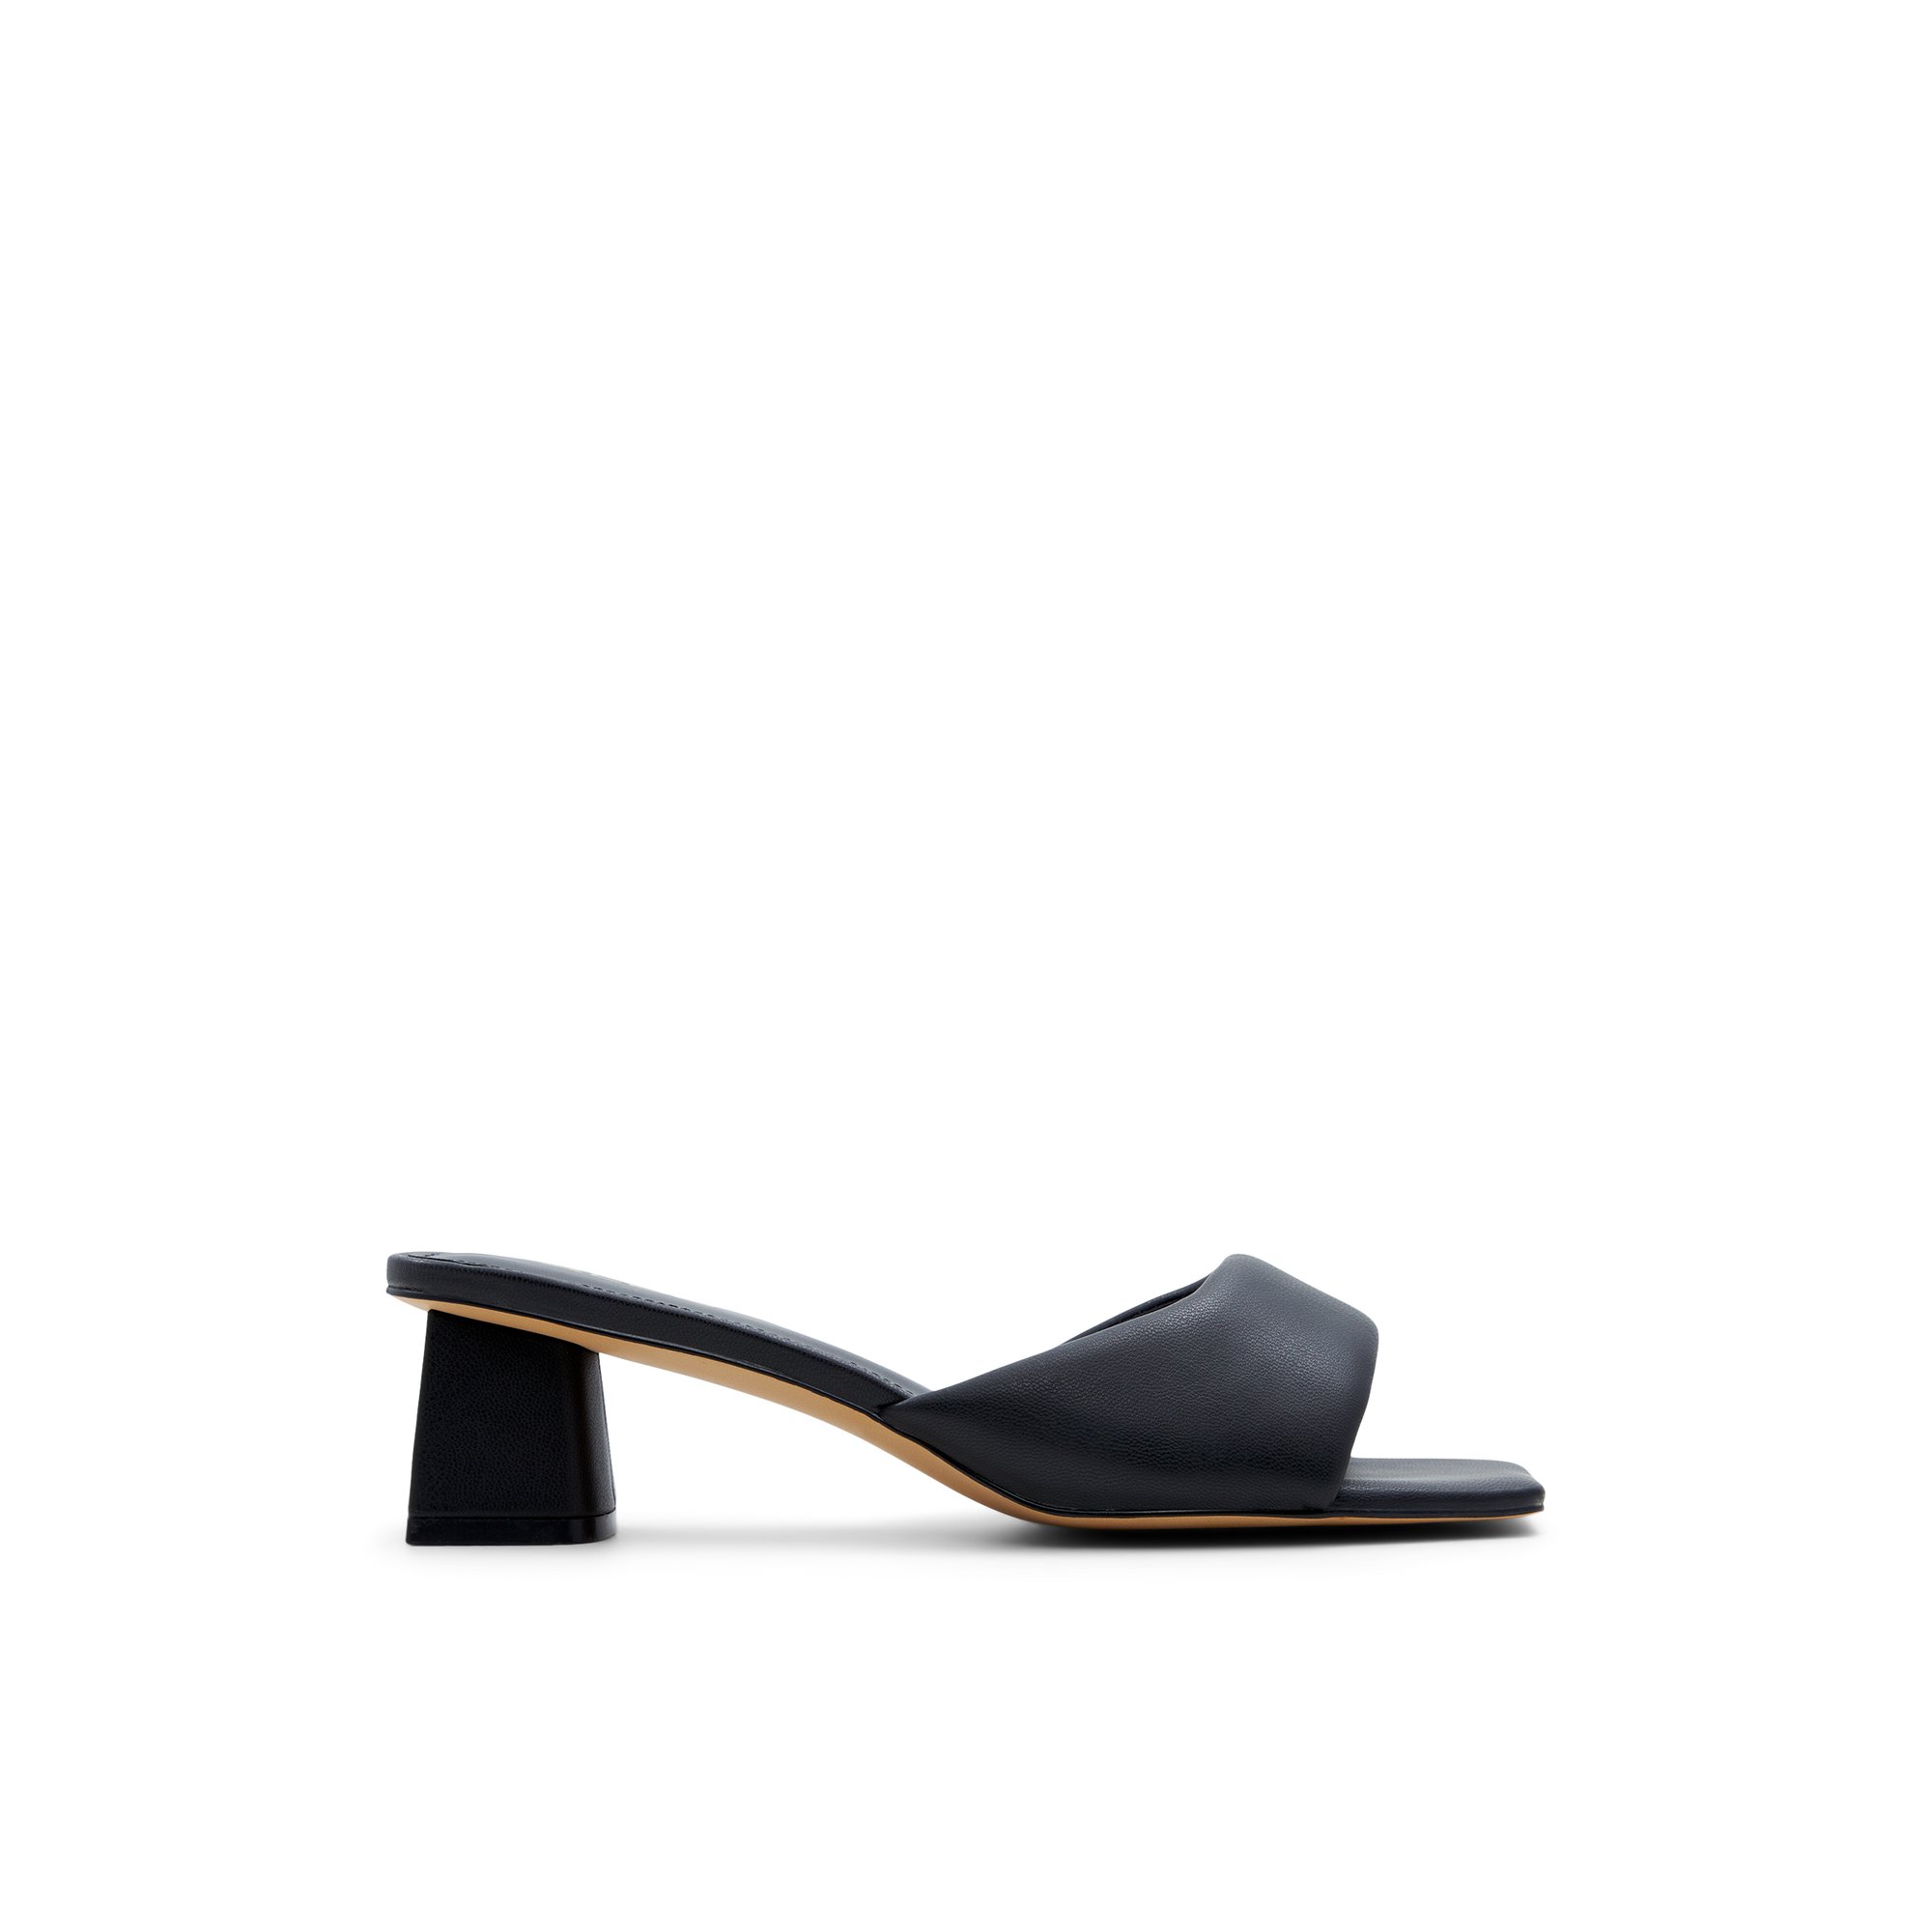 ALDO Aneka - Women's Kitten Heel - Black